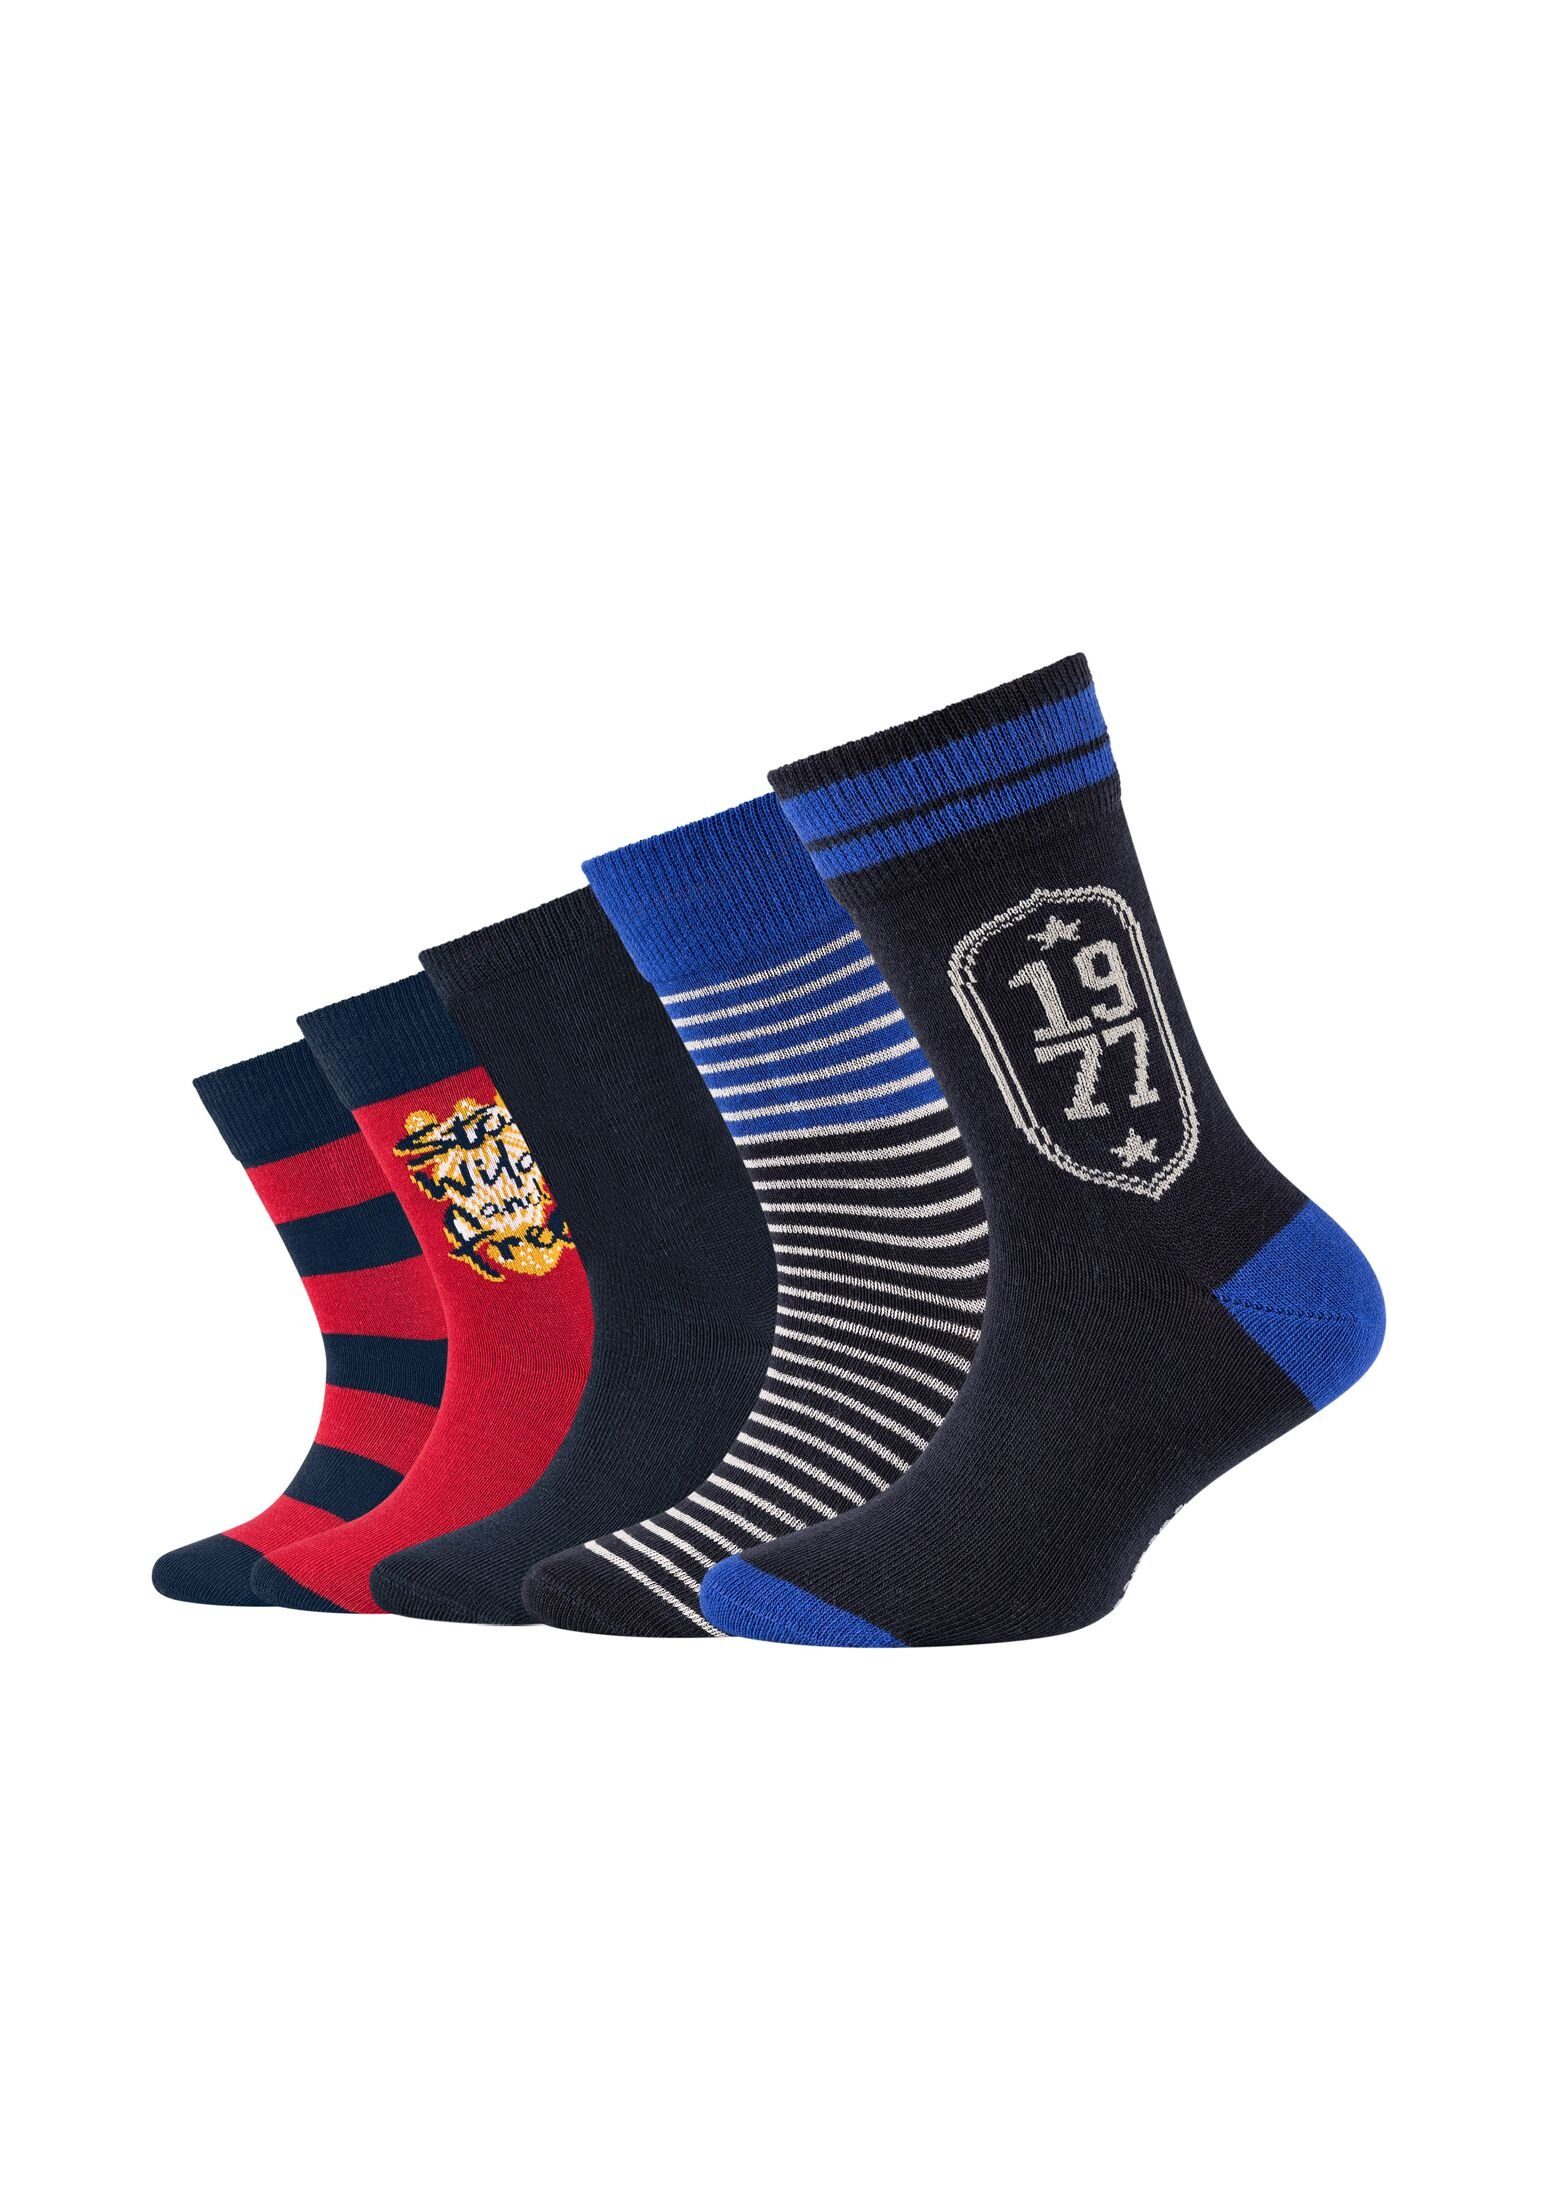 Camano Socken Socken 5er Pack navy